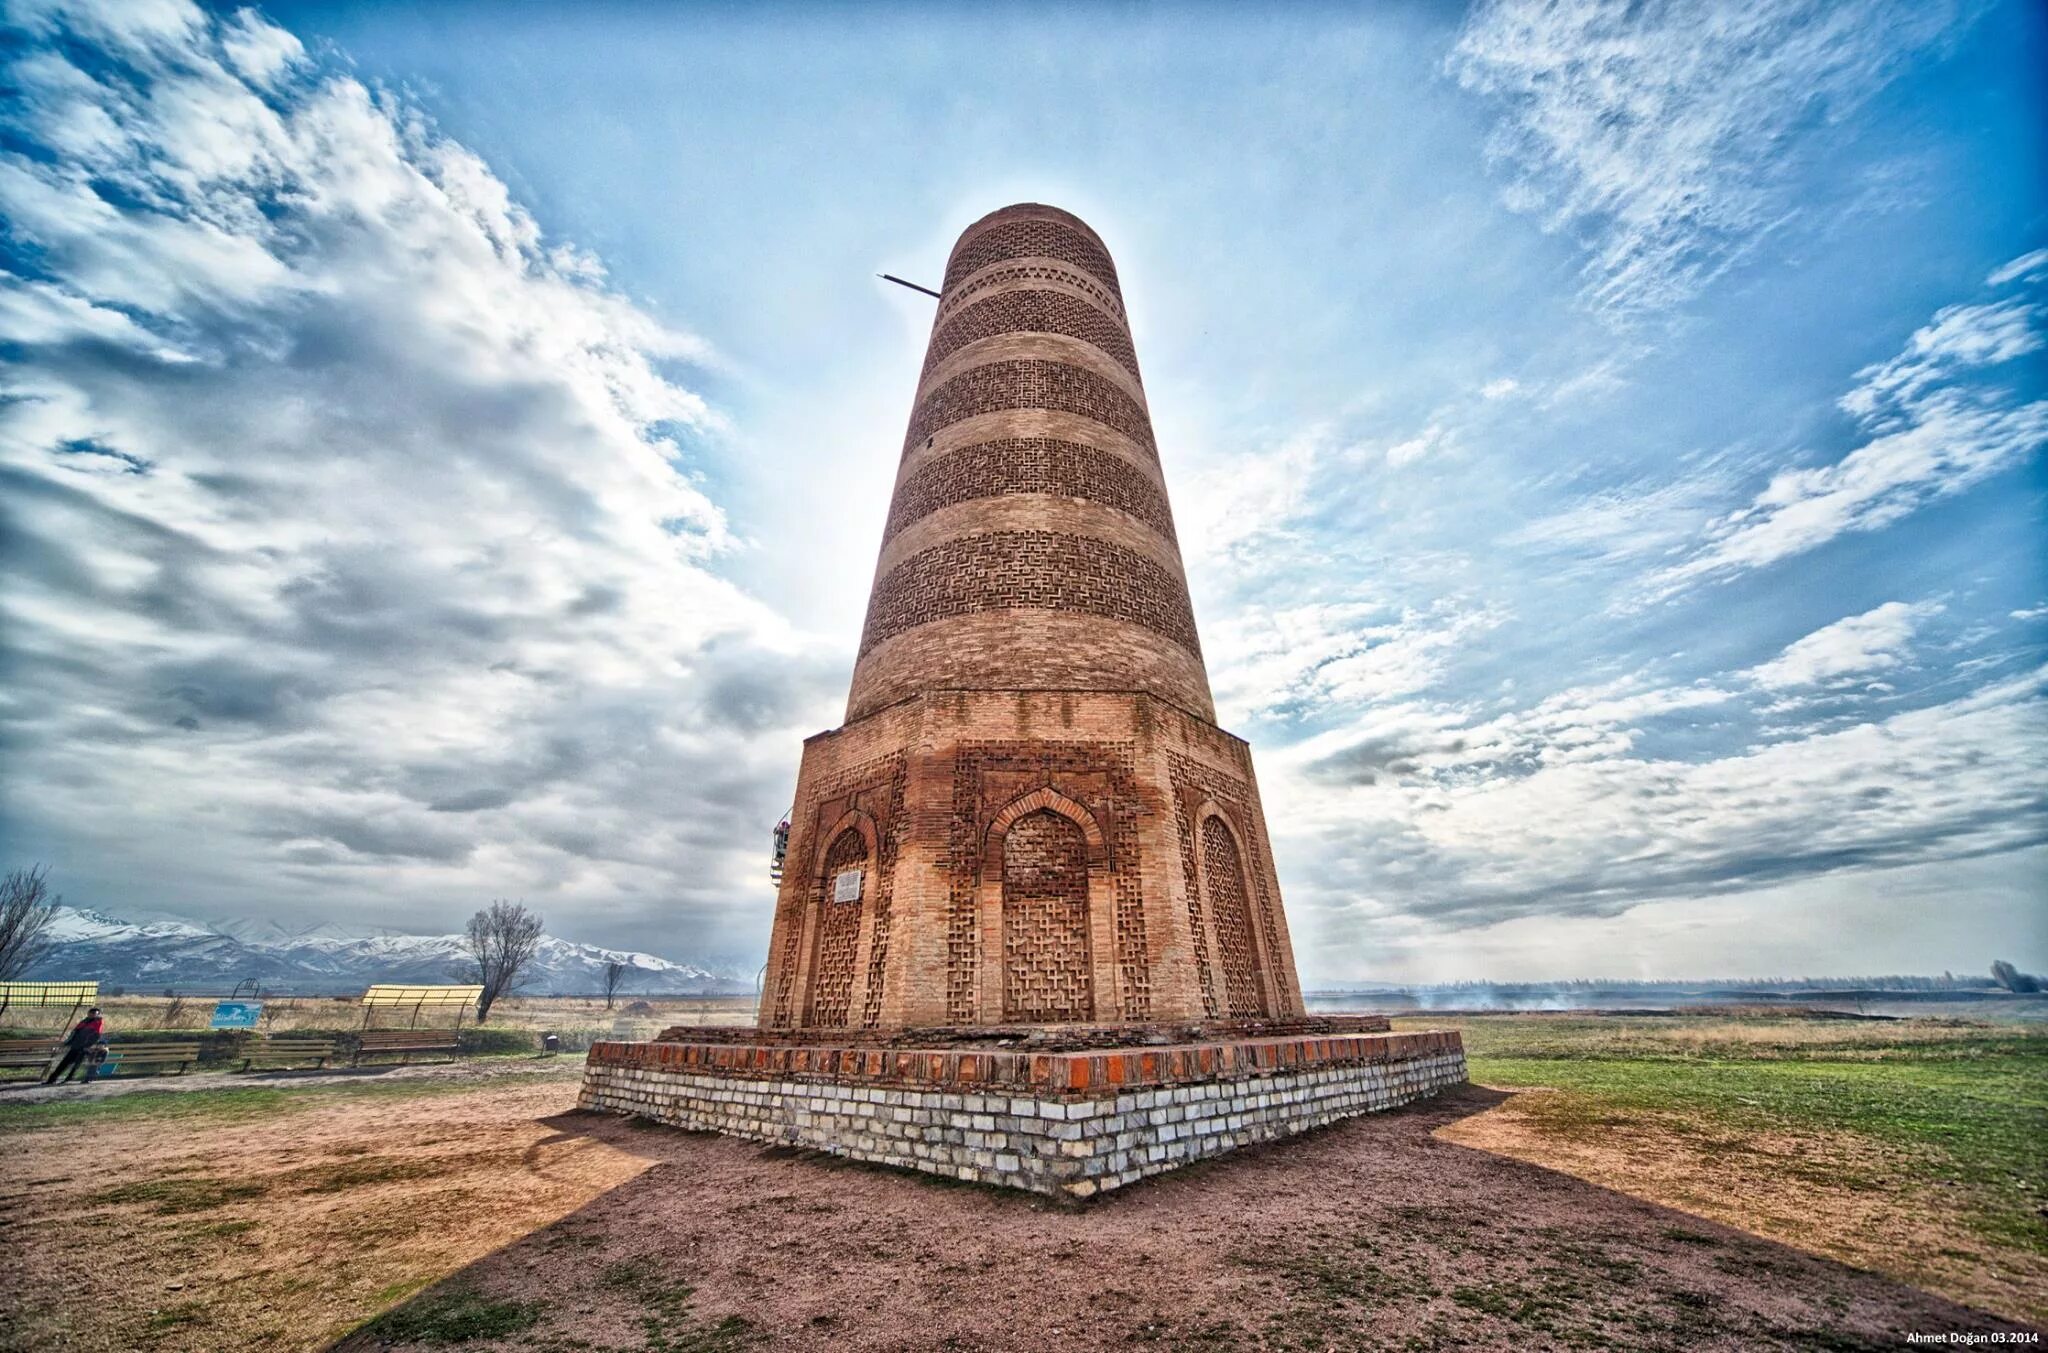 Баласагун. Башня Бурана в Кыргызстане. Токмак башня Бурана. Башня Бурана Чуйская область. Башня Бурана архитектура Караханидов.